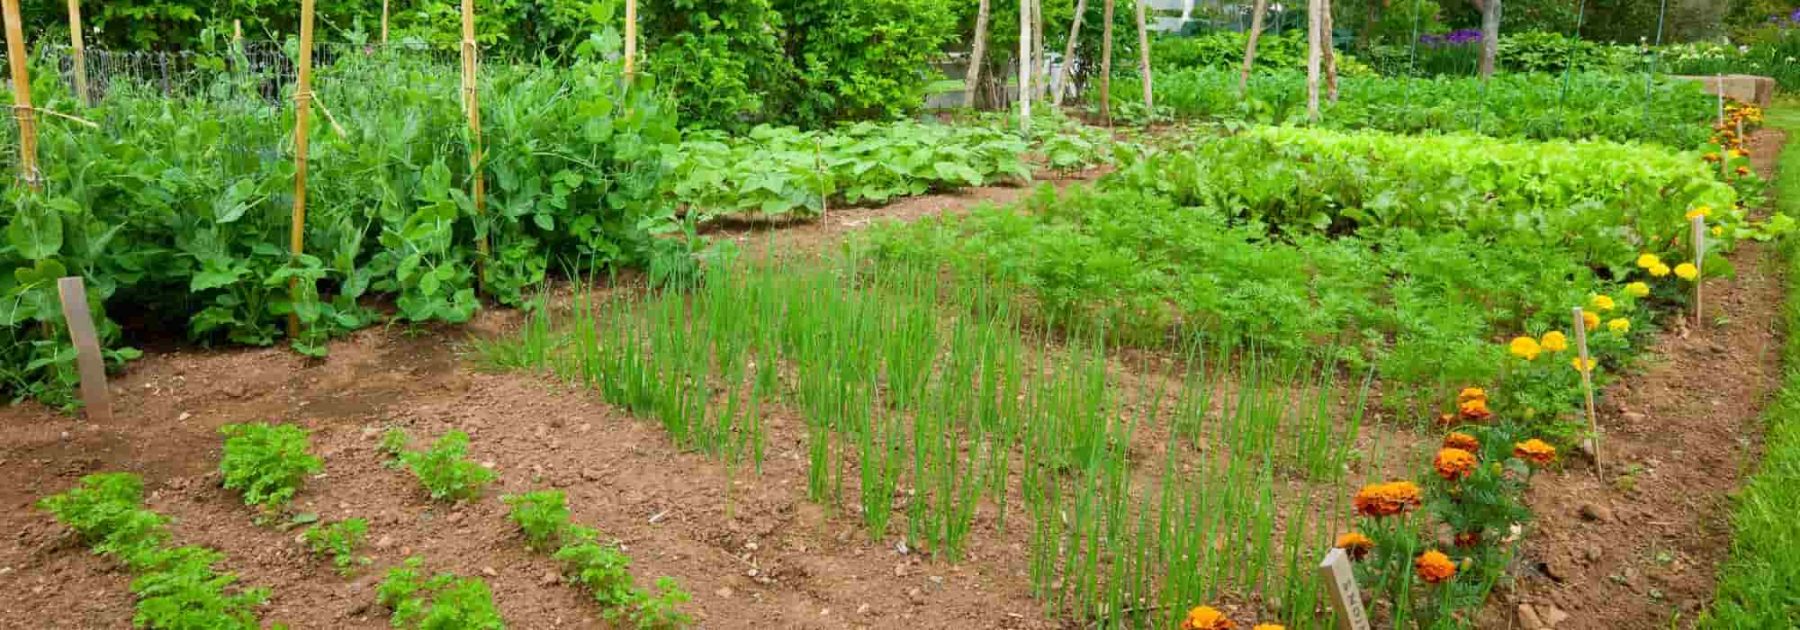 Ver de terre, utile pour vos semis au jardin